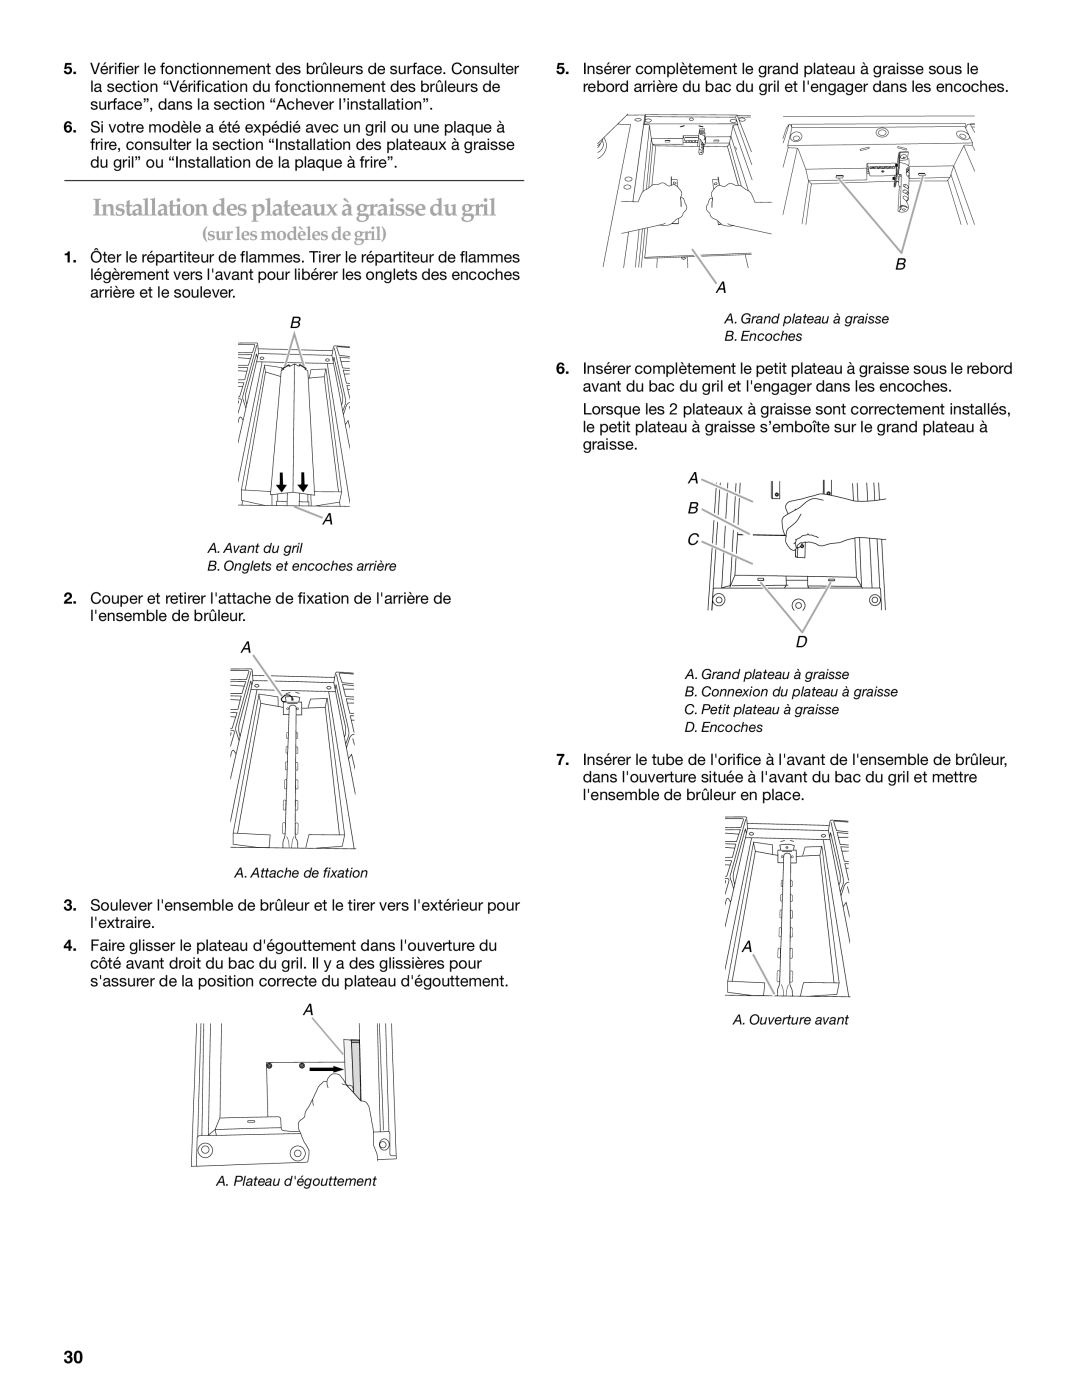 KitchenAid W10271686C installation instructions Installationdes plateaux àgraissedugril, sur les modèlesde gril, A B C D 